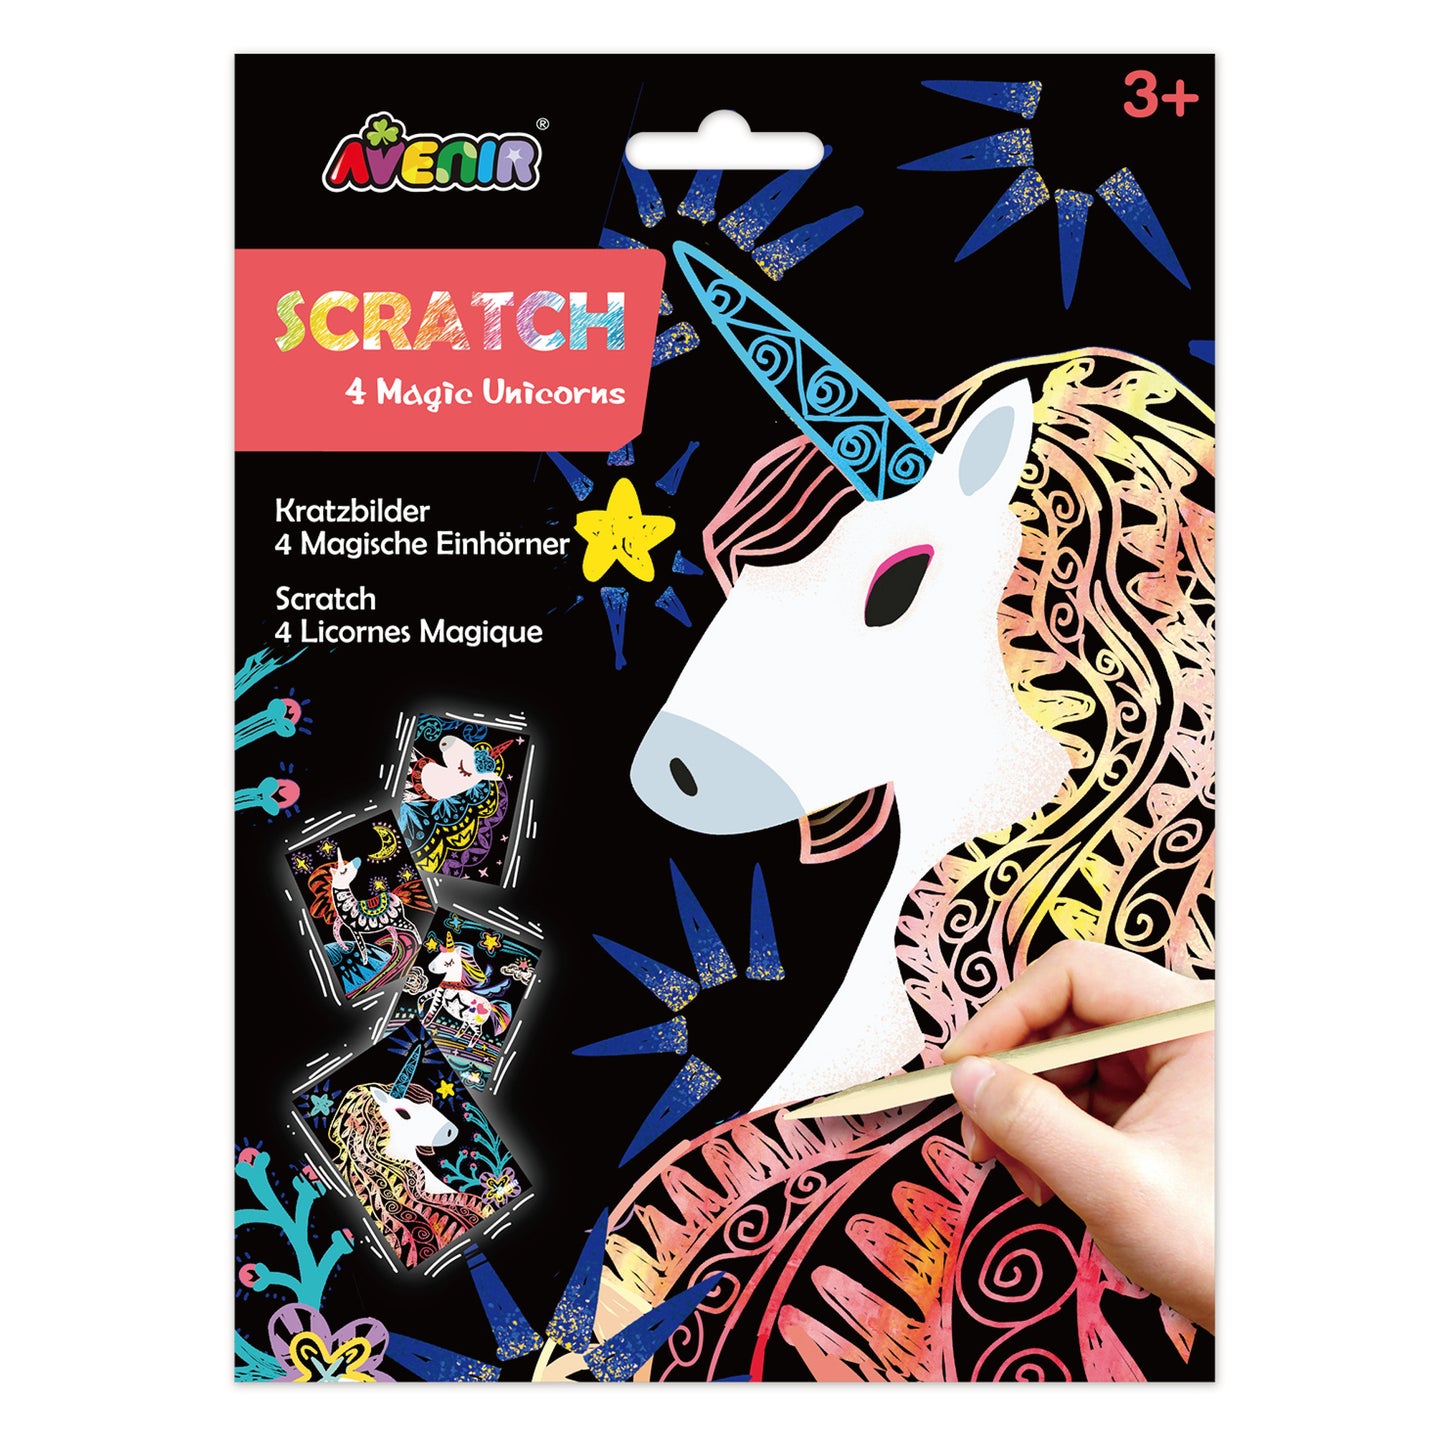 Scratch Magic Unicorn